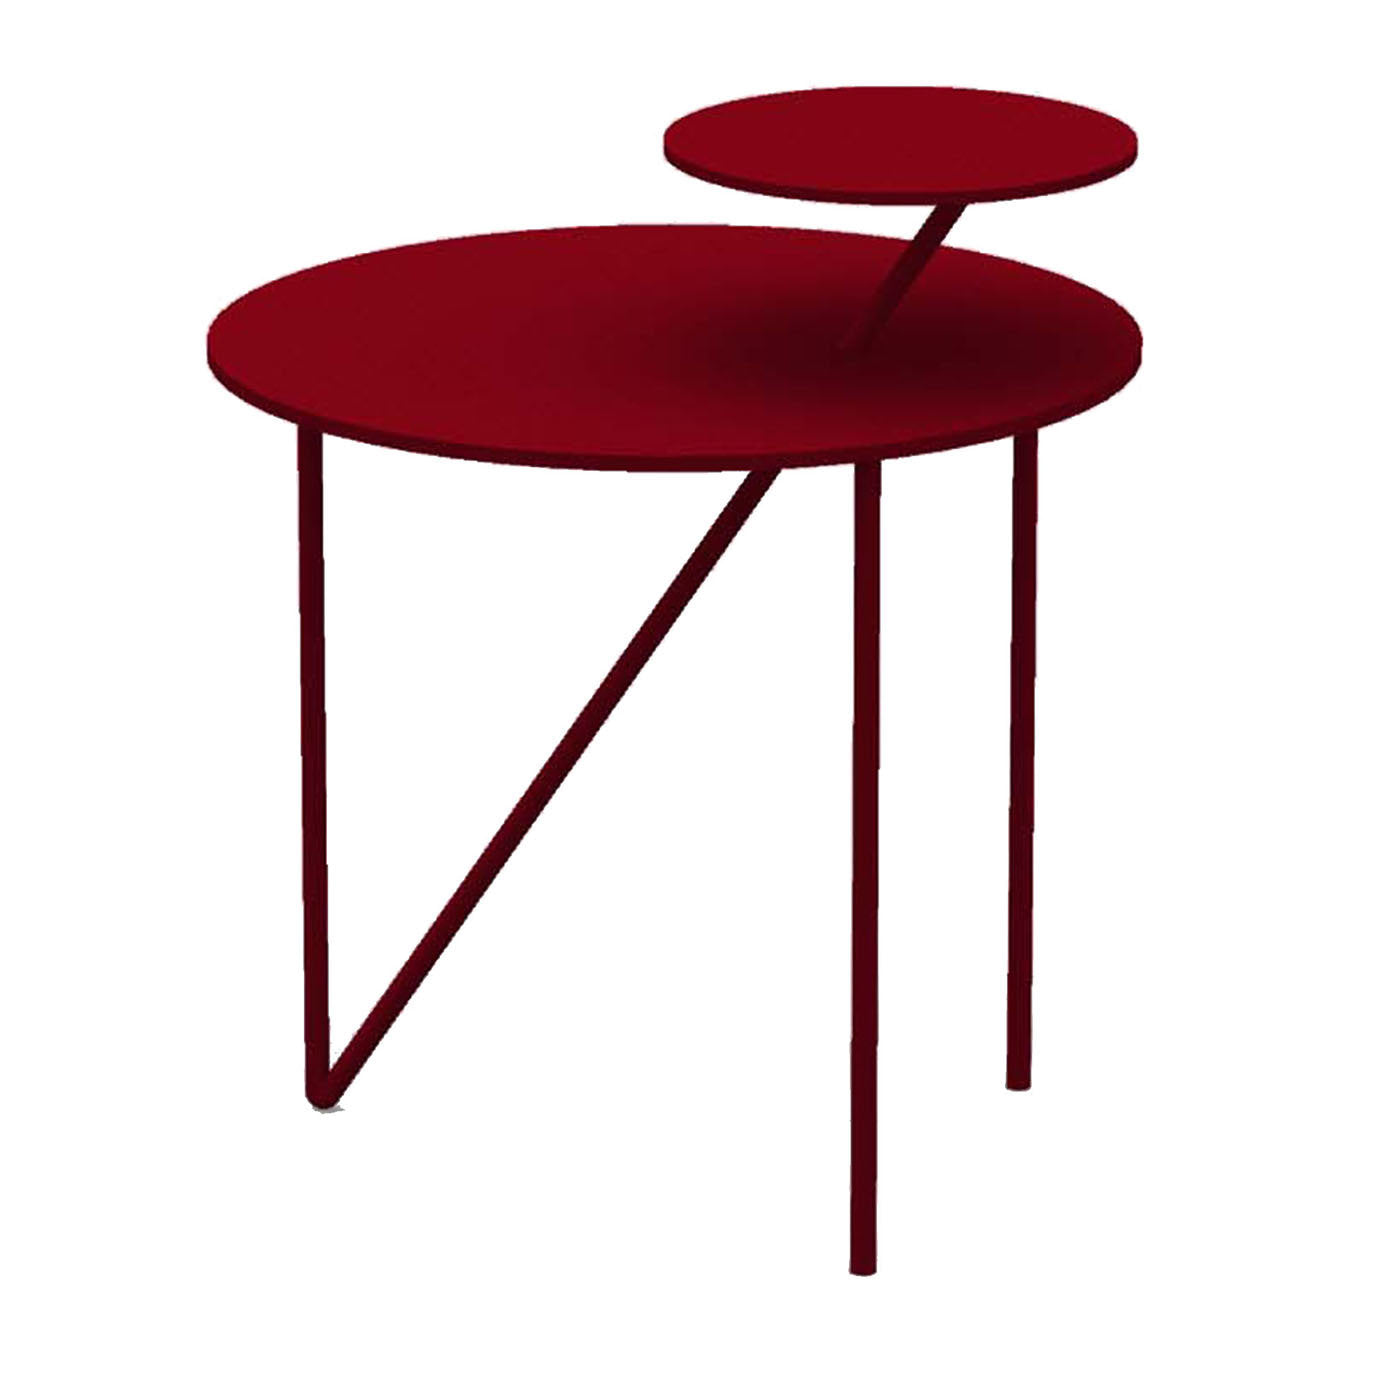 Table basse Passante rouge rubis - Vue principale